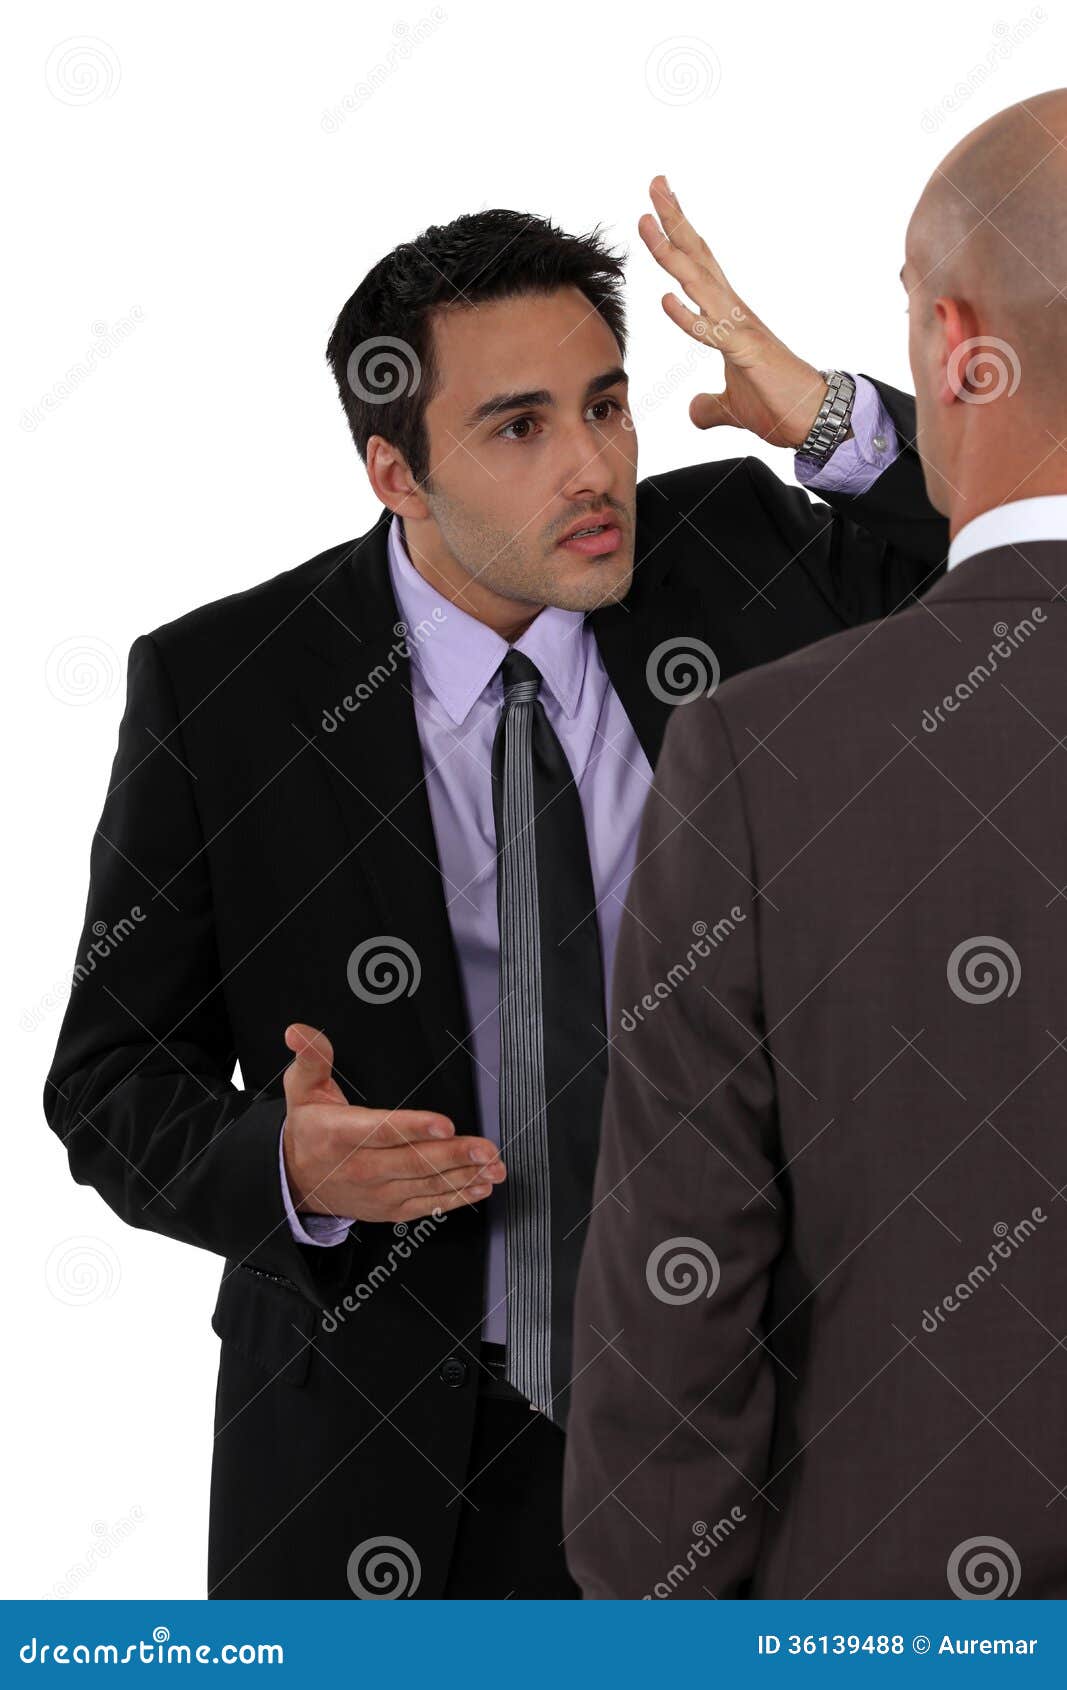 two businessmen disagreeing